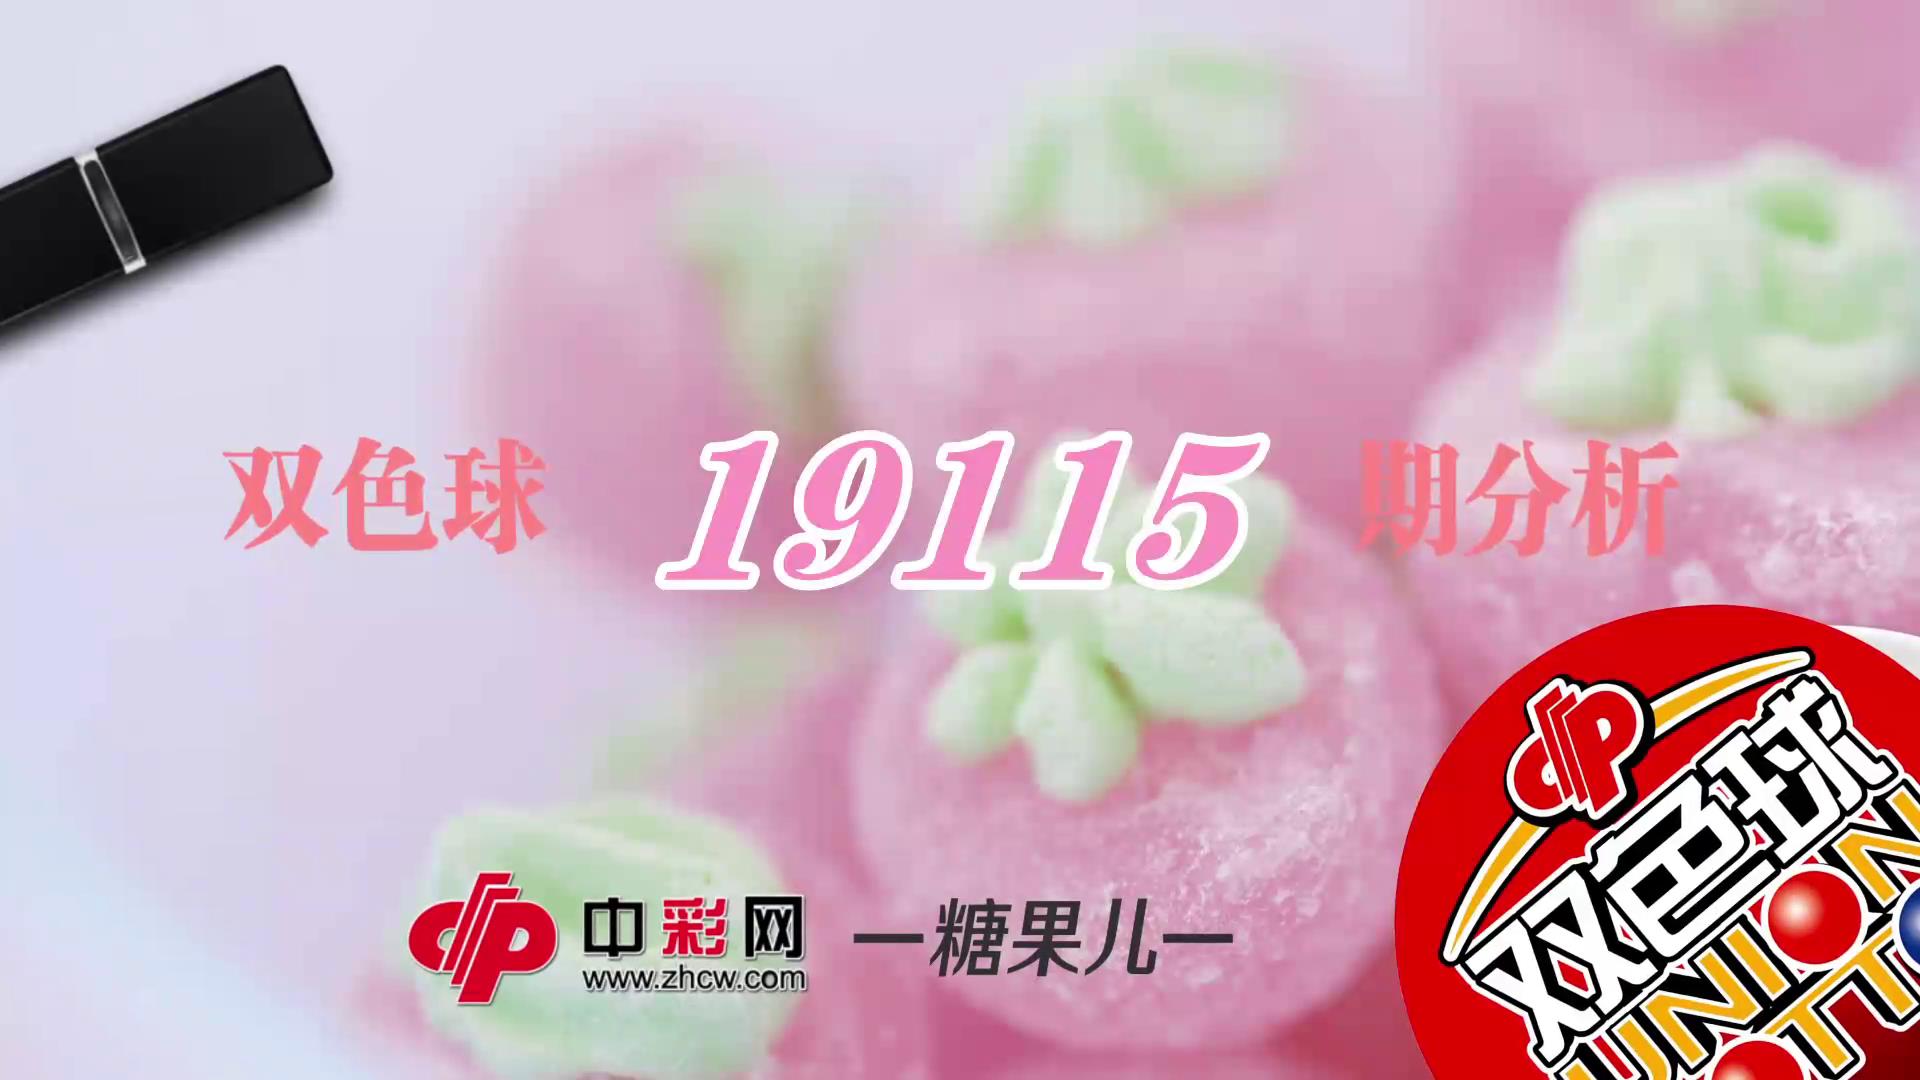 【中彩视频】糖果儿双色球第19115期